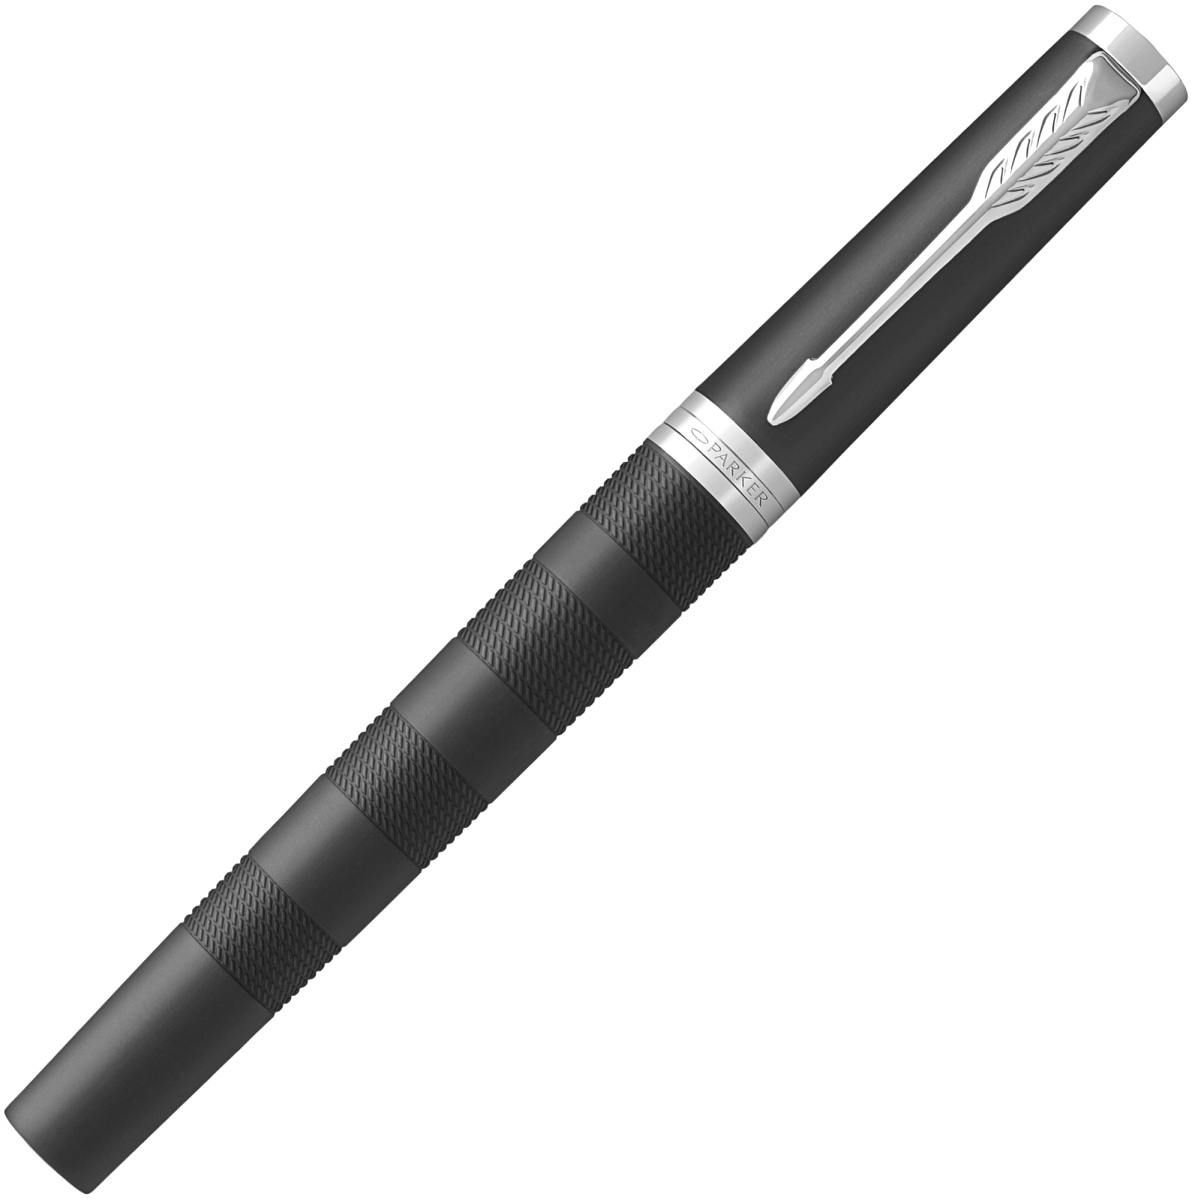  Набор: ручка 5й пишущий узел + чехол Parker Ingenuity Large F501, Black Rubber CT, фото 4